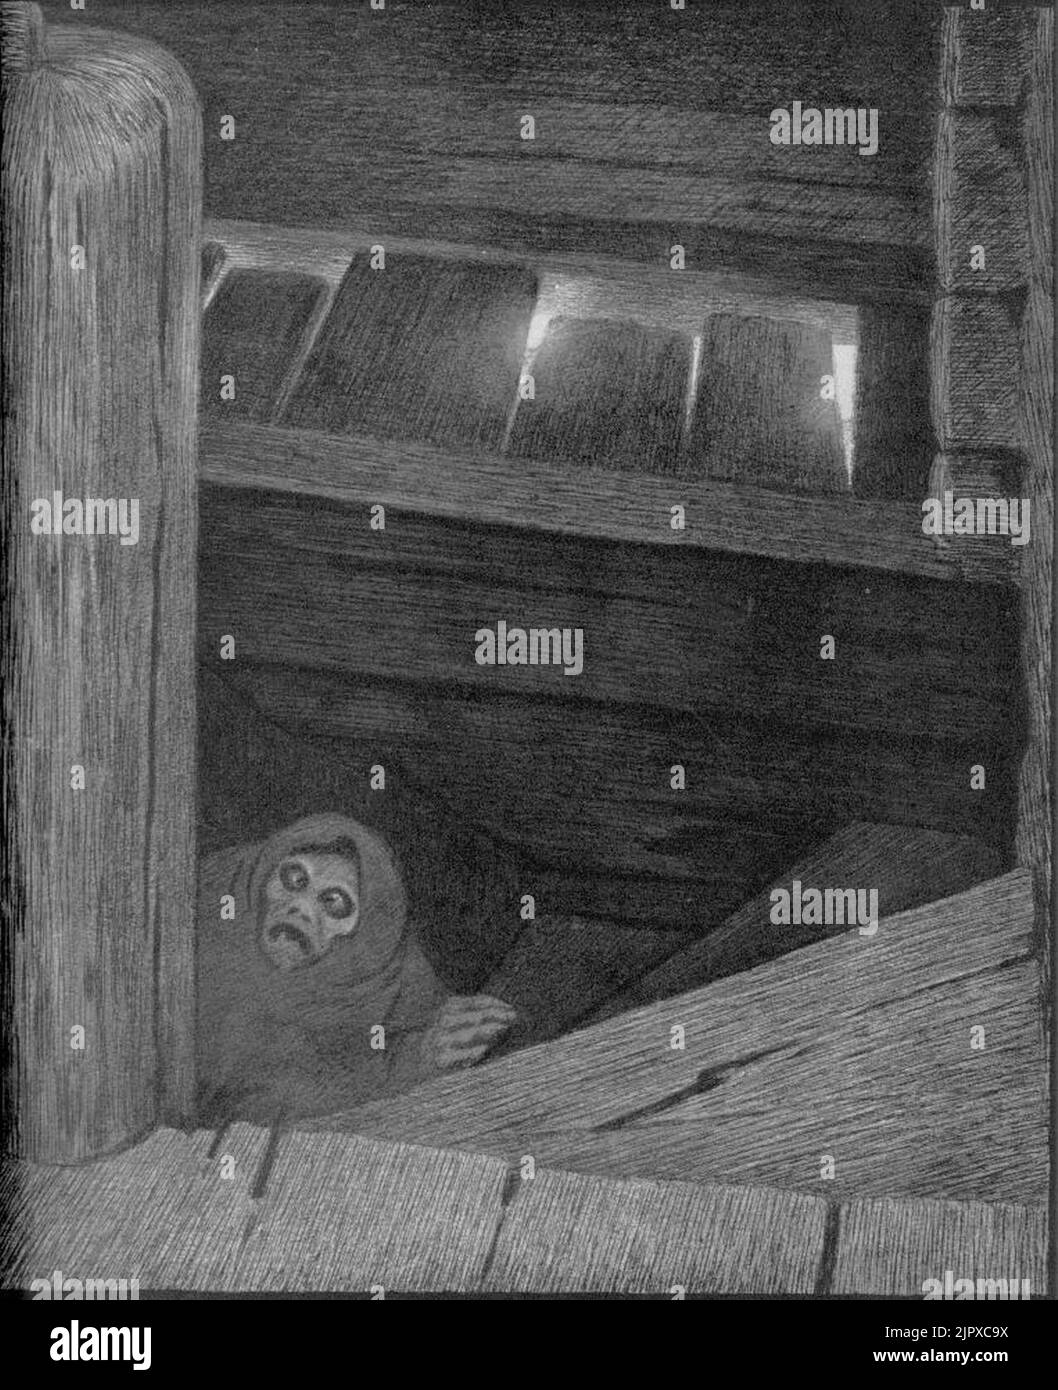 Theodor Kittelsen - Pesta i trappen, 1896 (Pesta on the Stairs) Stock Photo